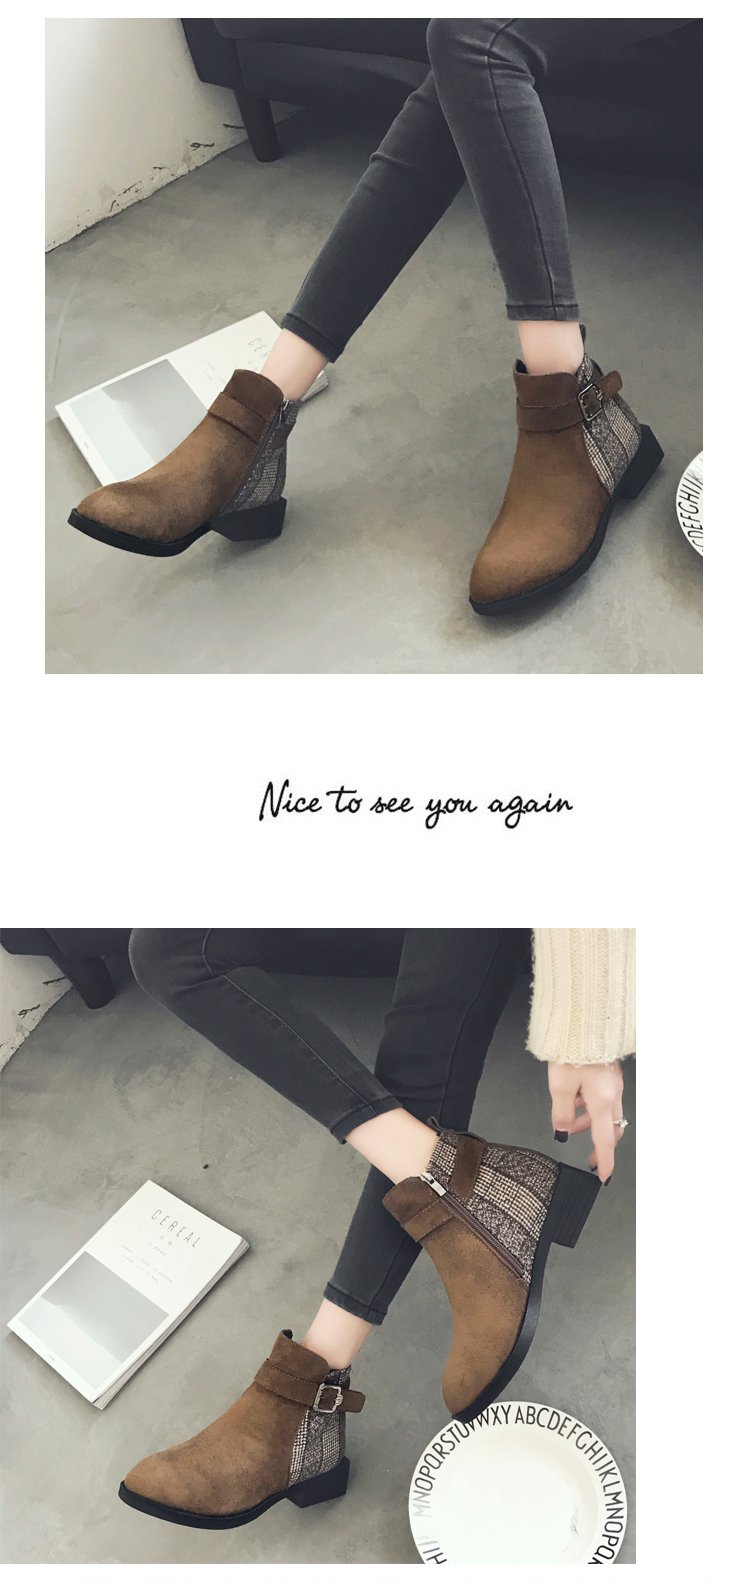 靴子女冬款2017新款百搭学生马丁靴短筒加绒中跟韩版磨砂皮短靴女